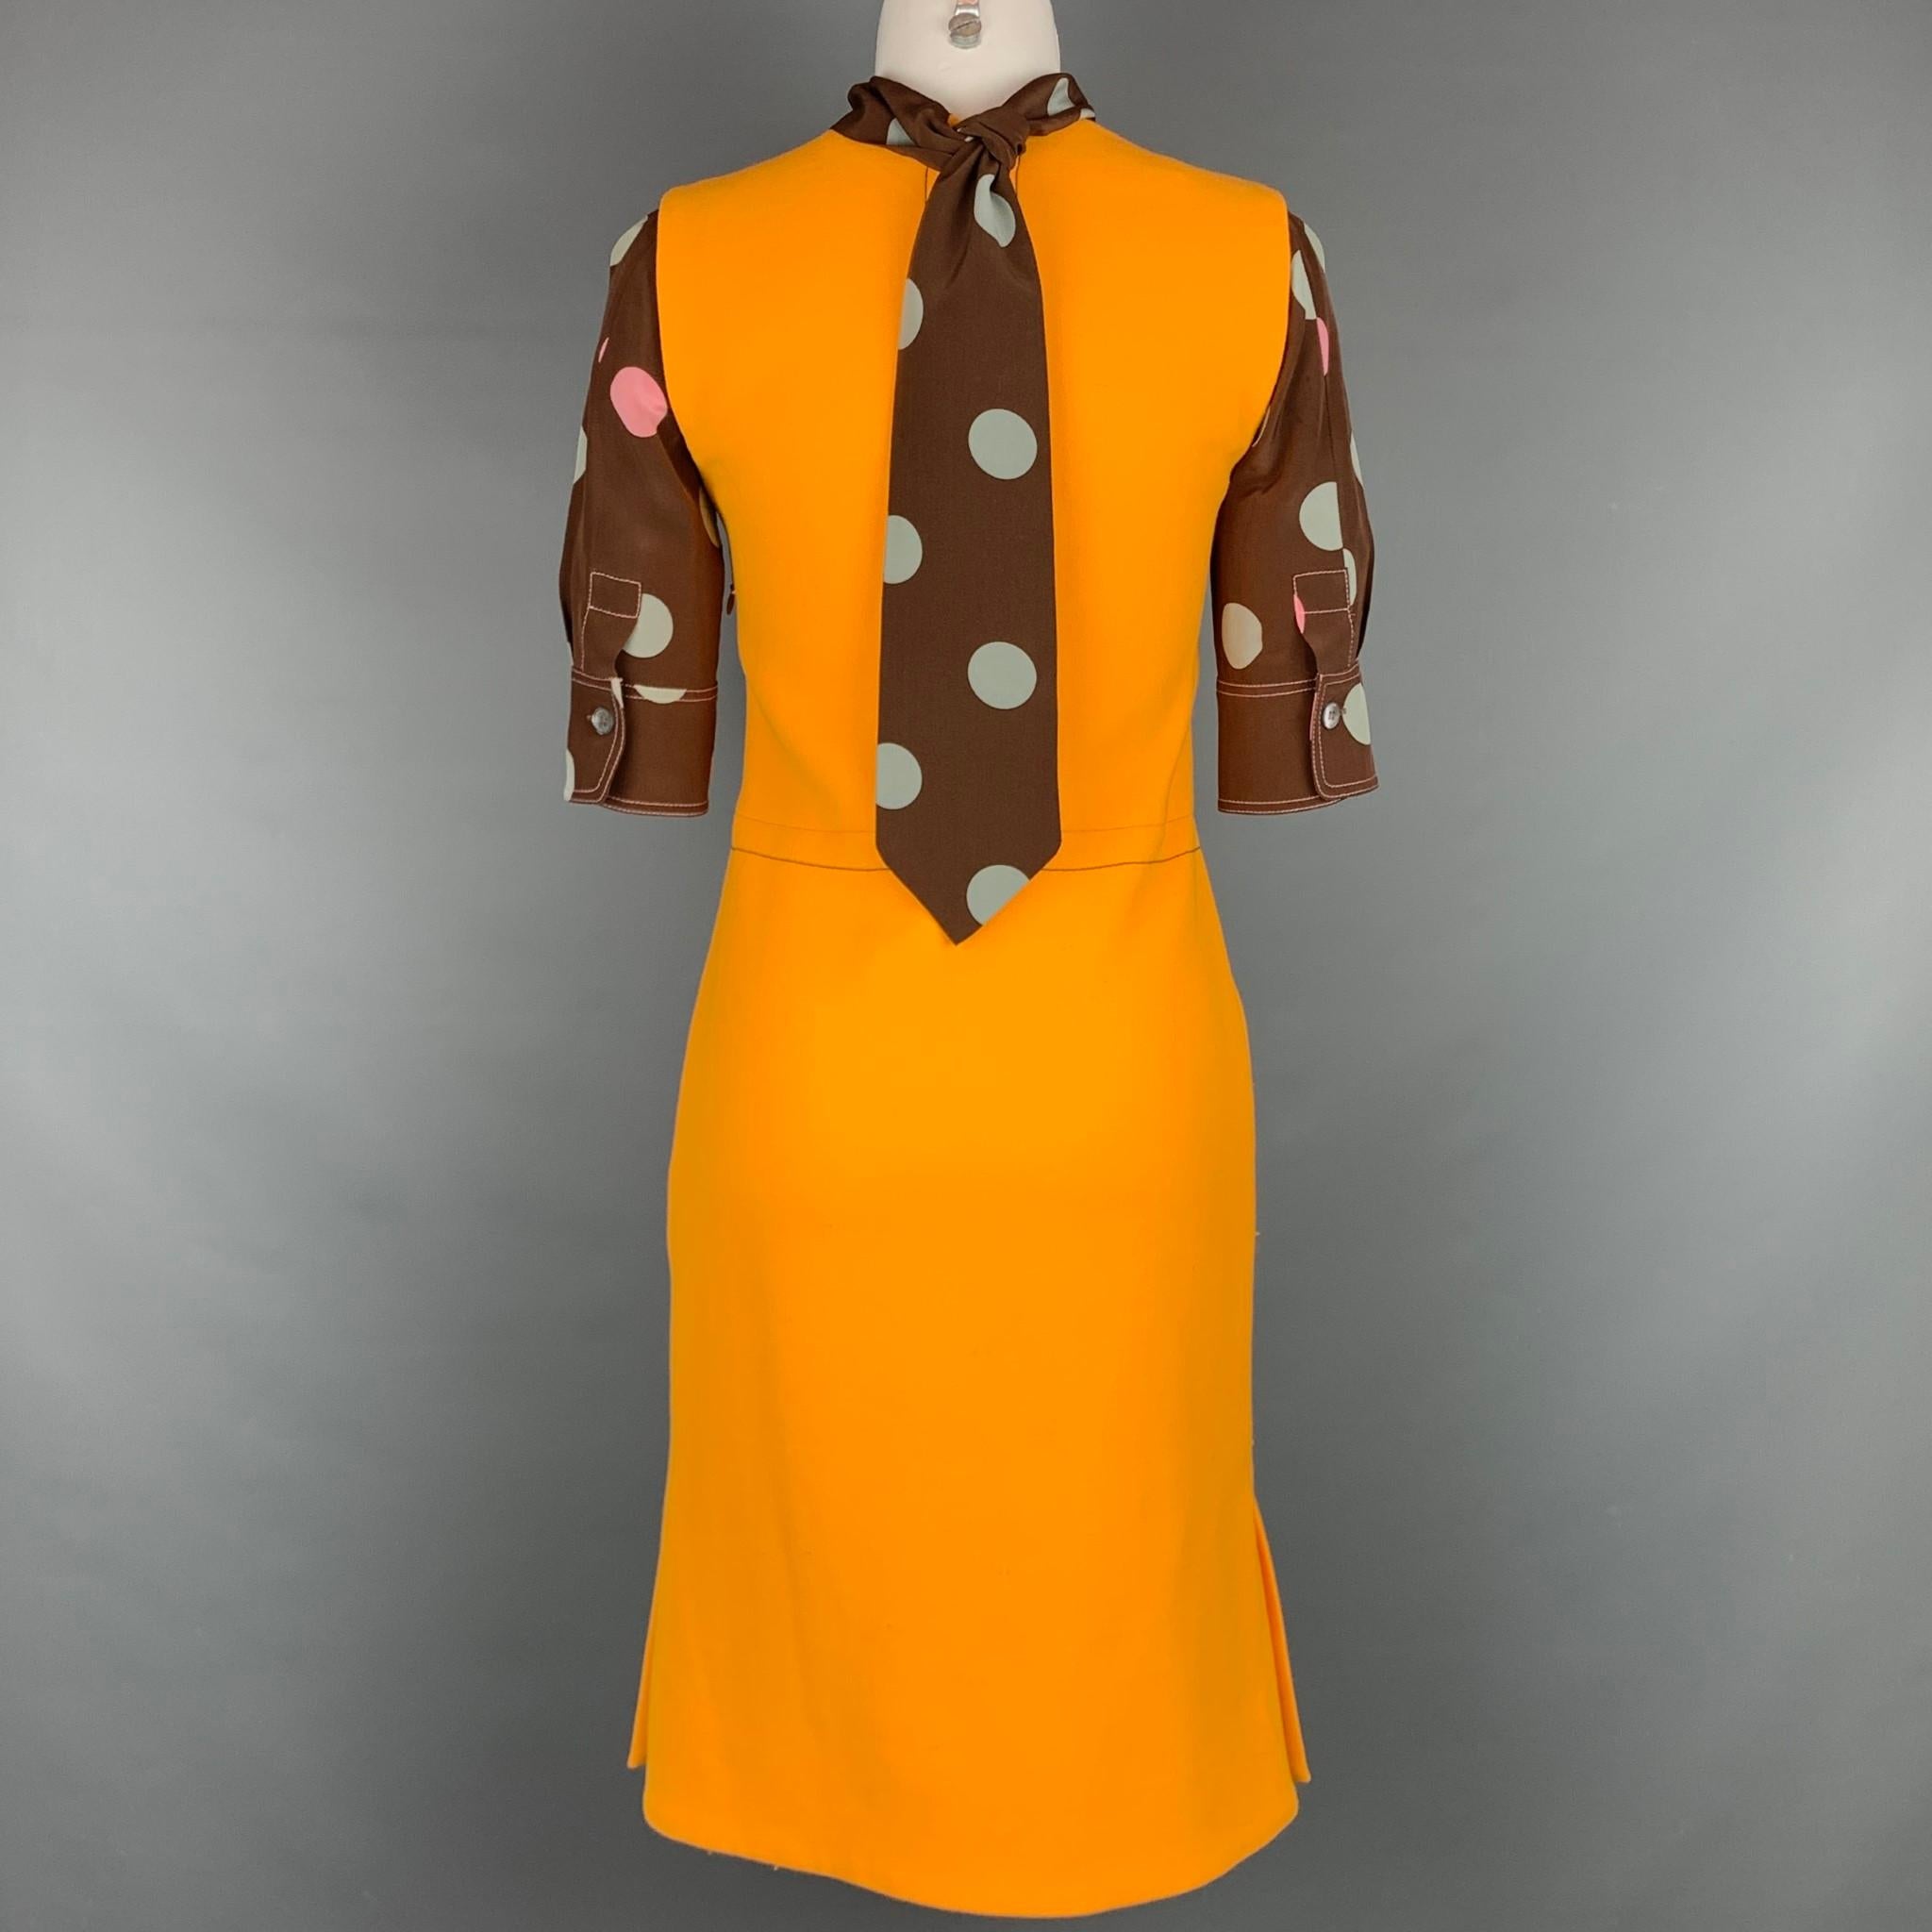 marni orange dress